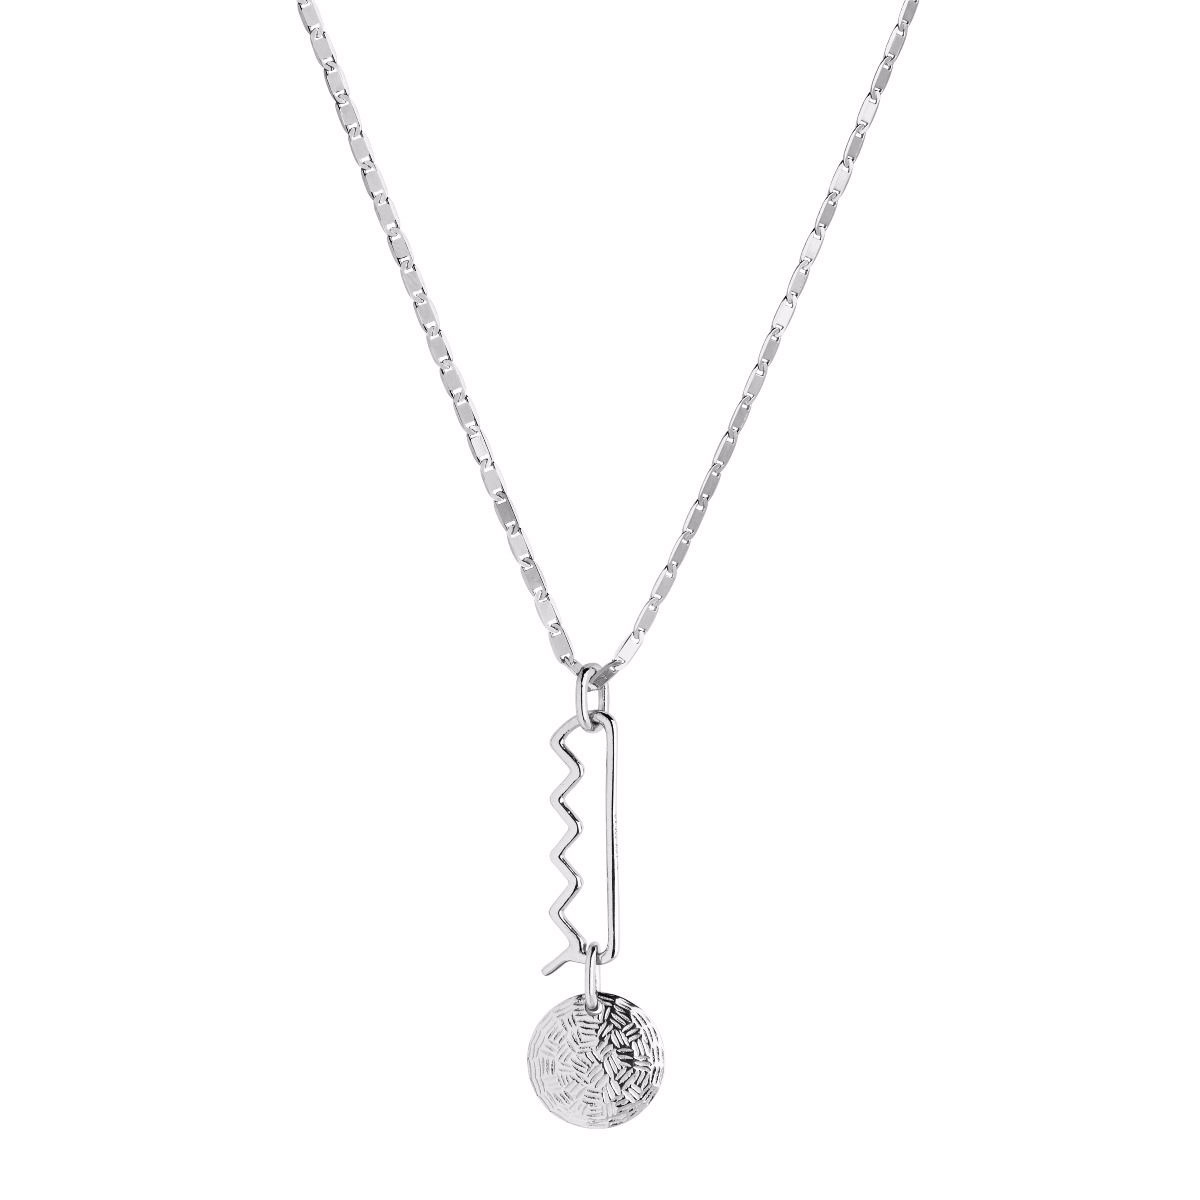 Colar de ródio branco de joias OEM / ODM de prata esterlina Fornecedor de joias por atacado personalizado